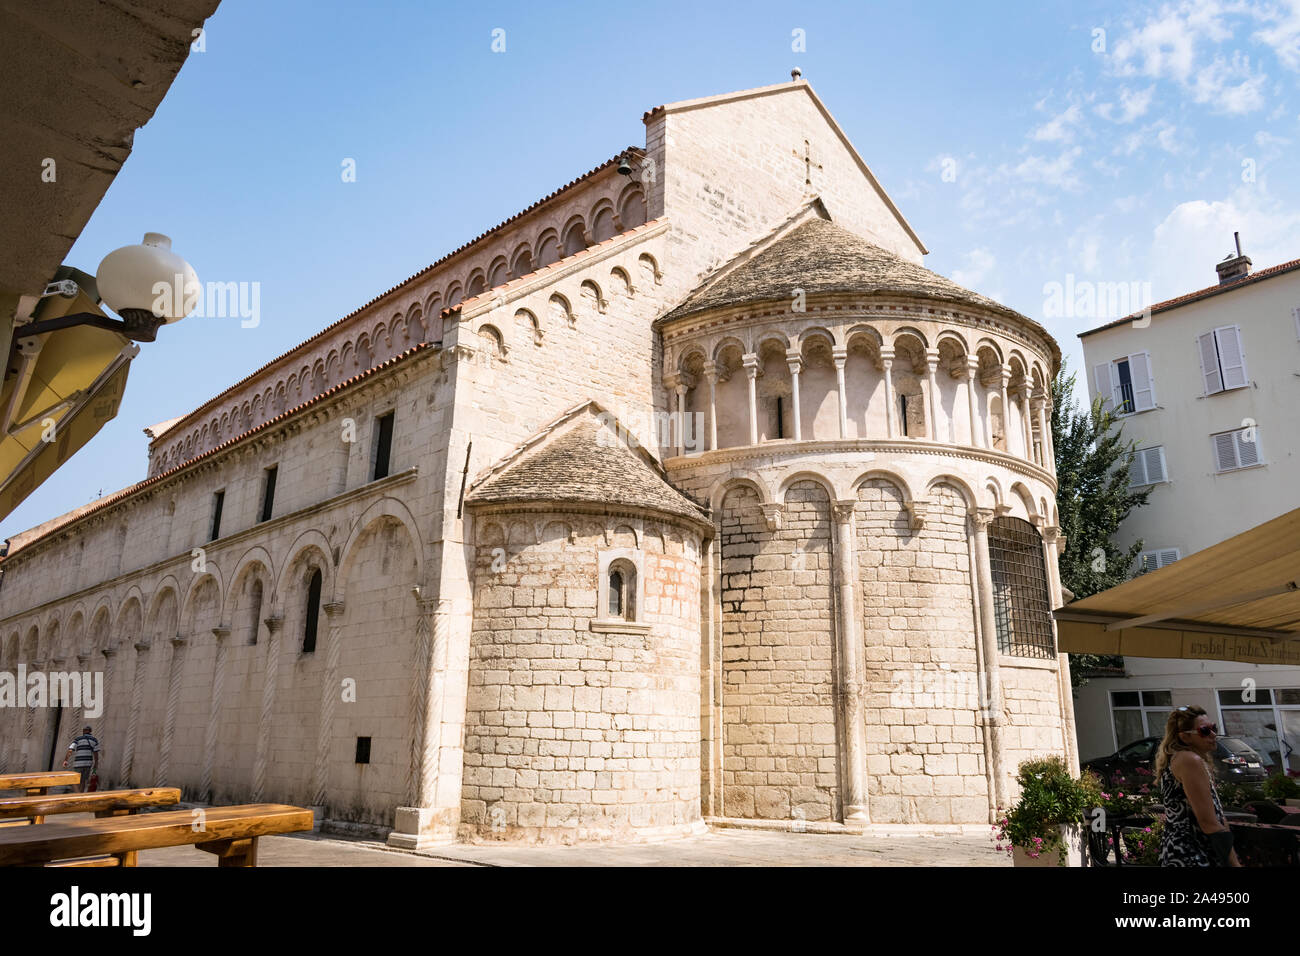 Chiesa di San Crisogono, una chiesa cattolica romana situato in Zadar, Croazia, portano il nome di San Crisogono, il santo patrono della città. Foto Stock